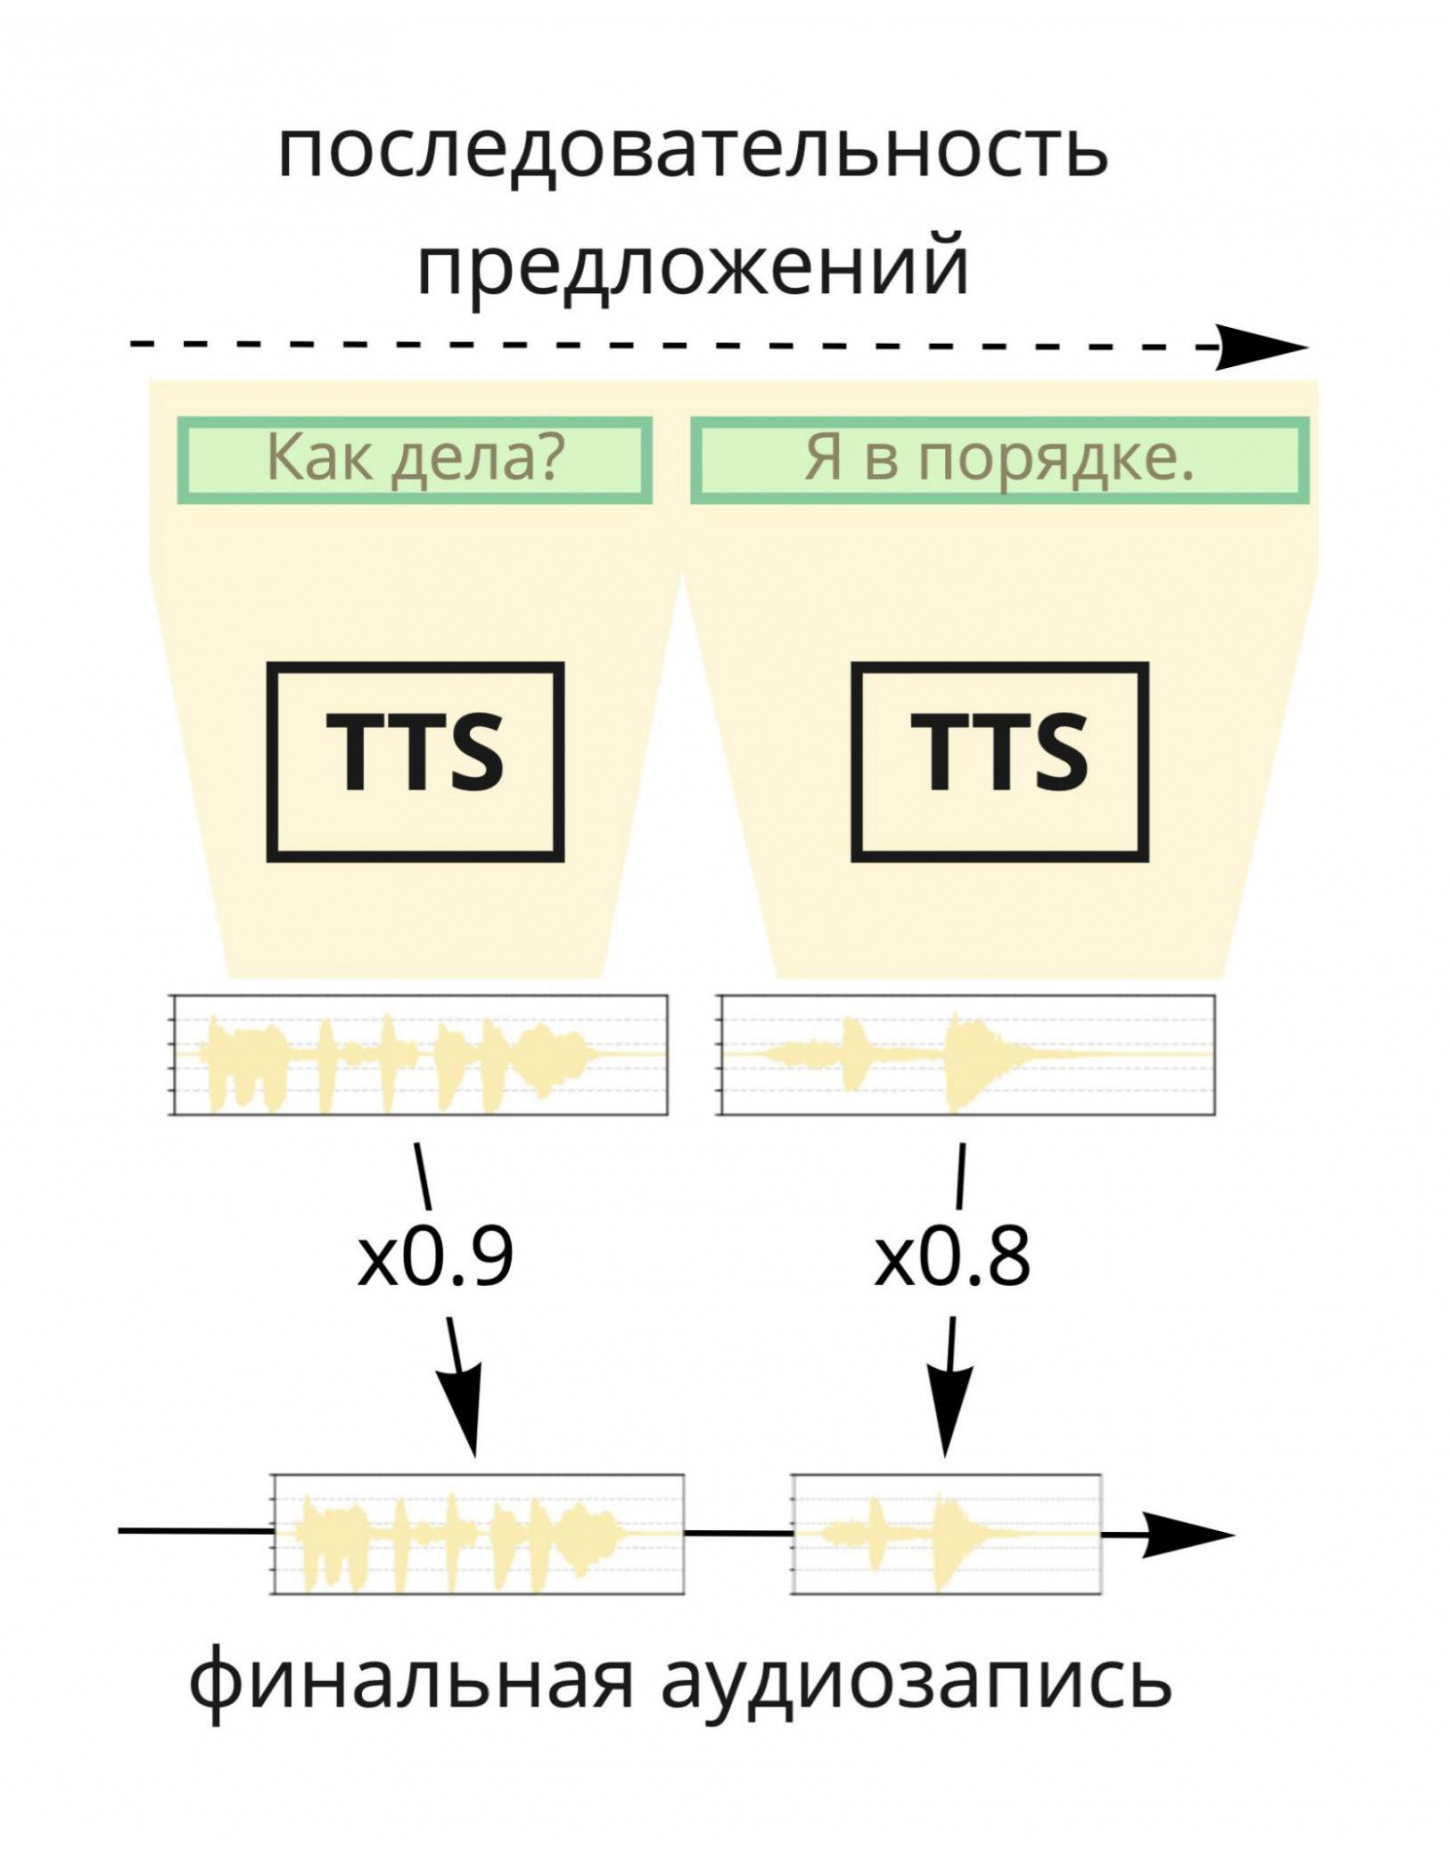 Как работает речевой синтез. Источник: «Яндекс»